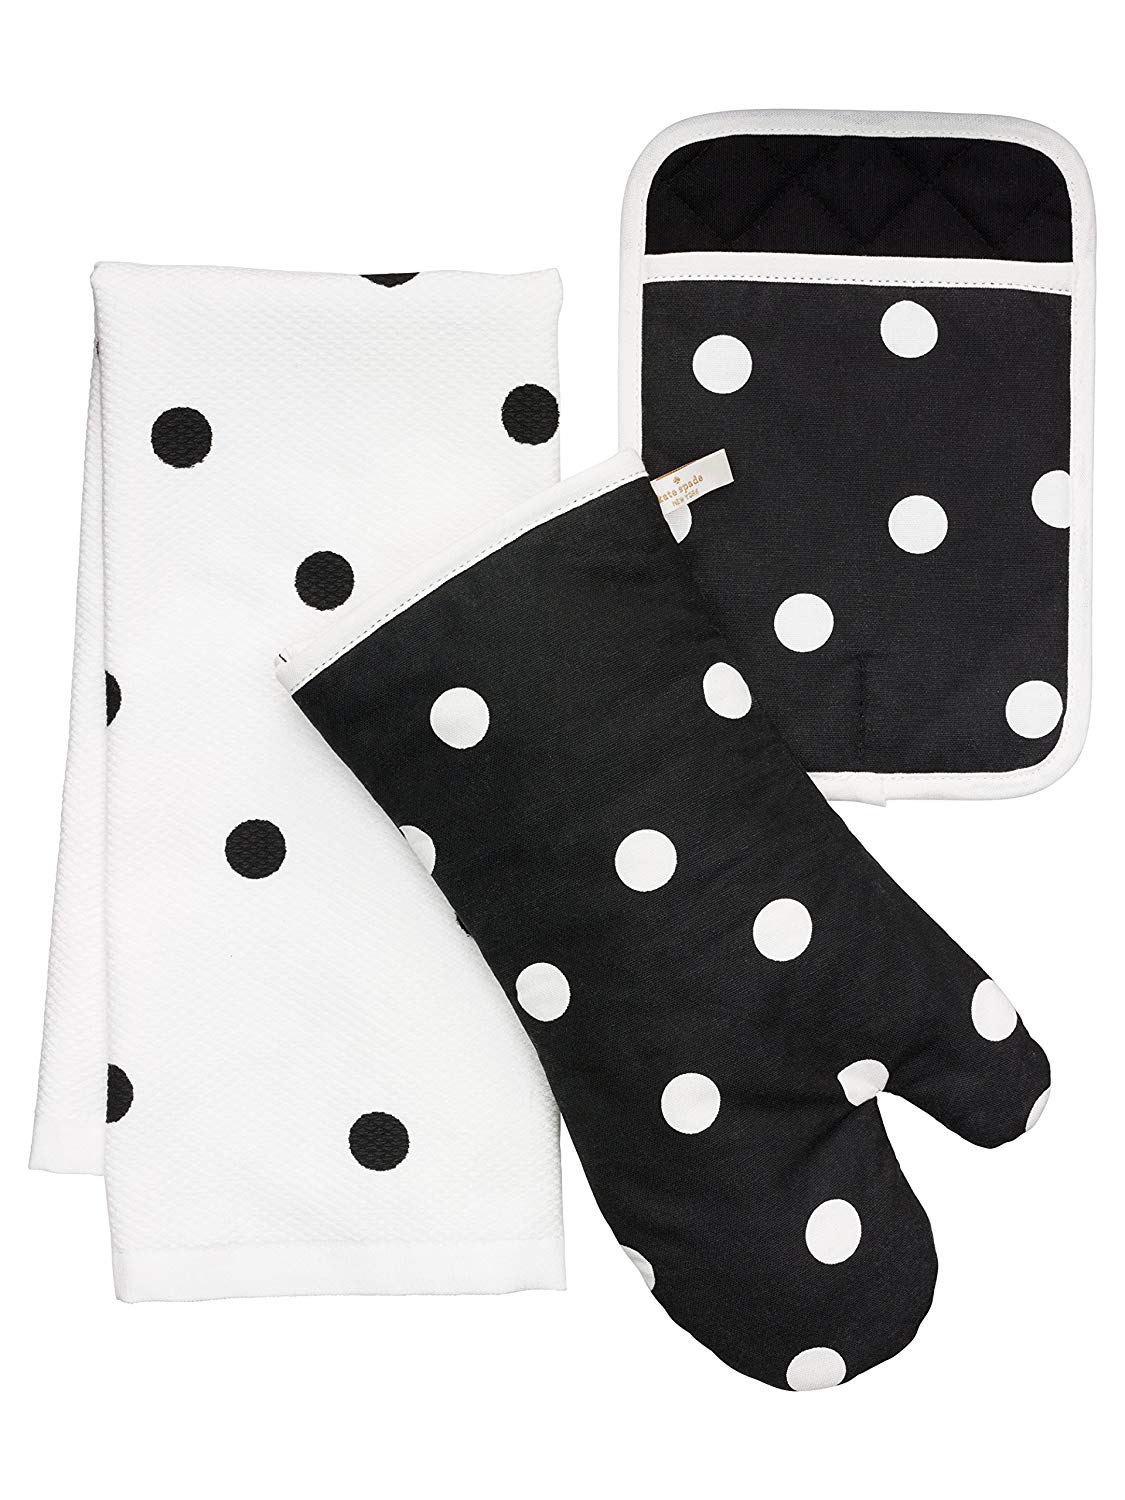 Kate Spade New York 3pc Kitchen Set - Oven Mitt, Pot Holder & Kitchen Towel  (Black & White Dots)